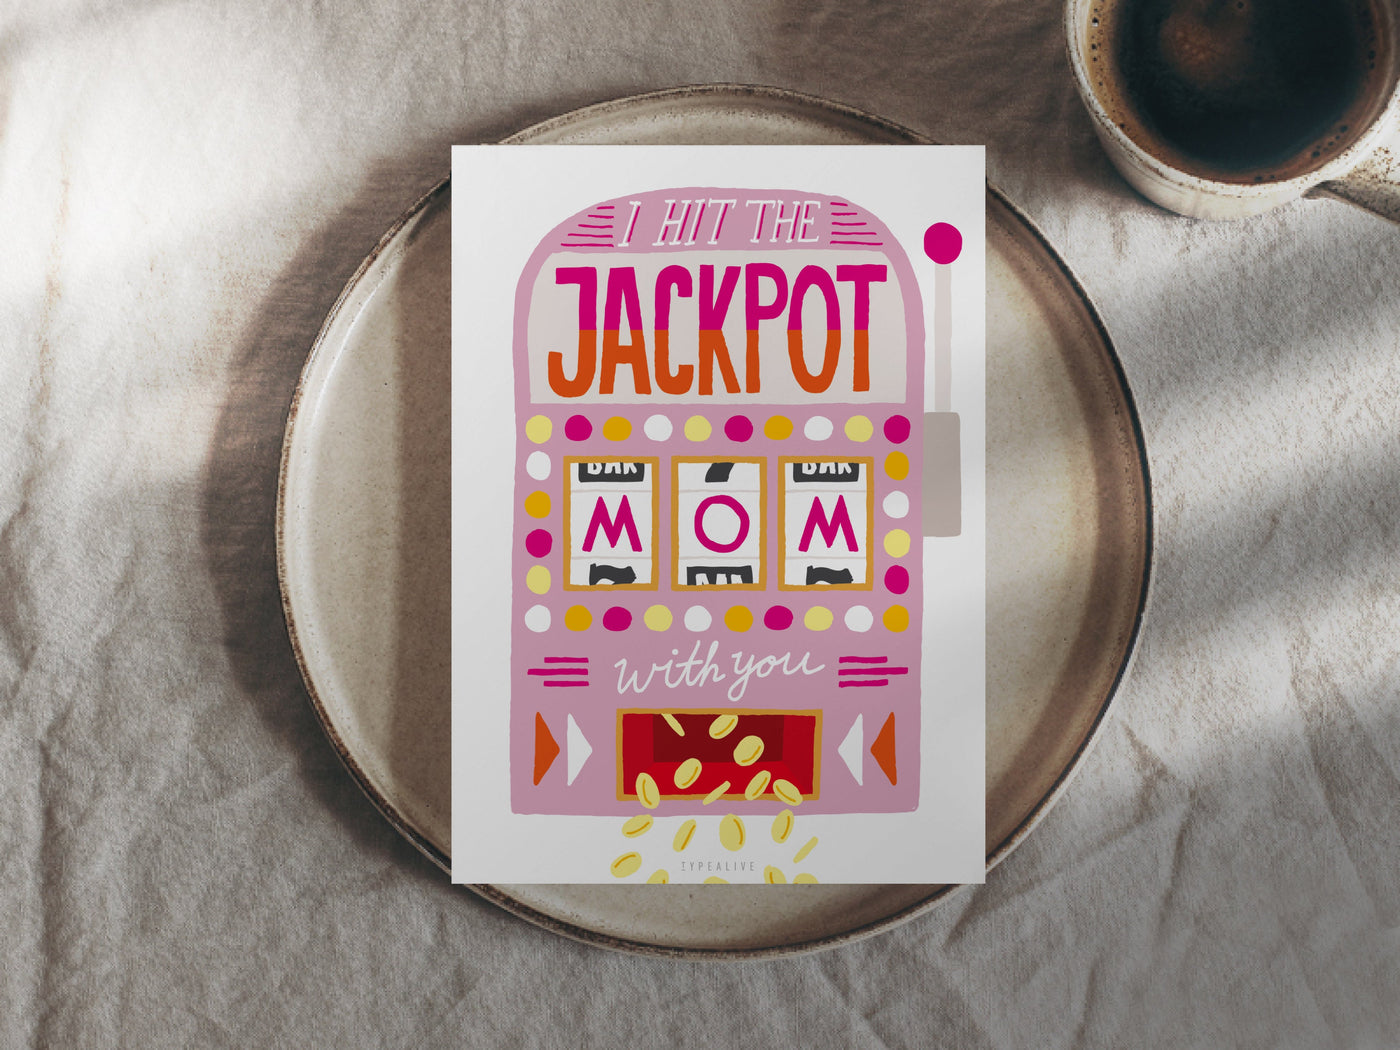 Postkarte / Jackpot Mom